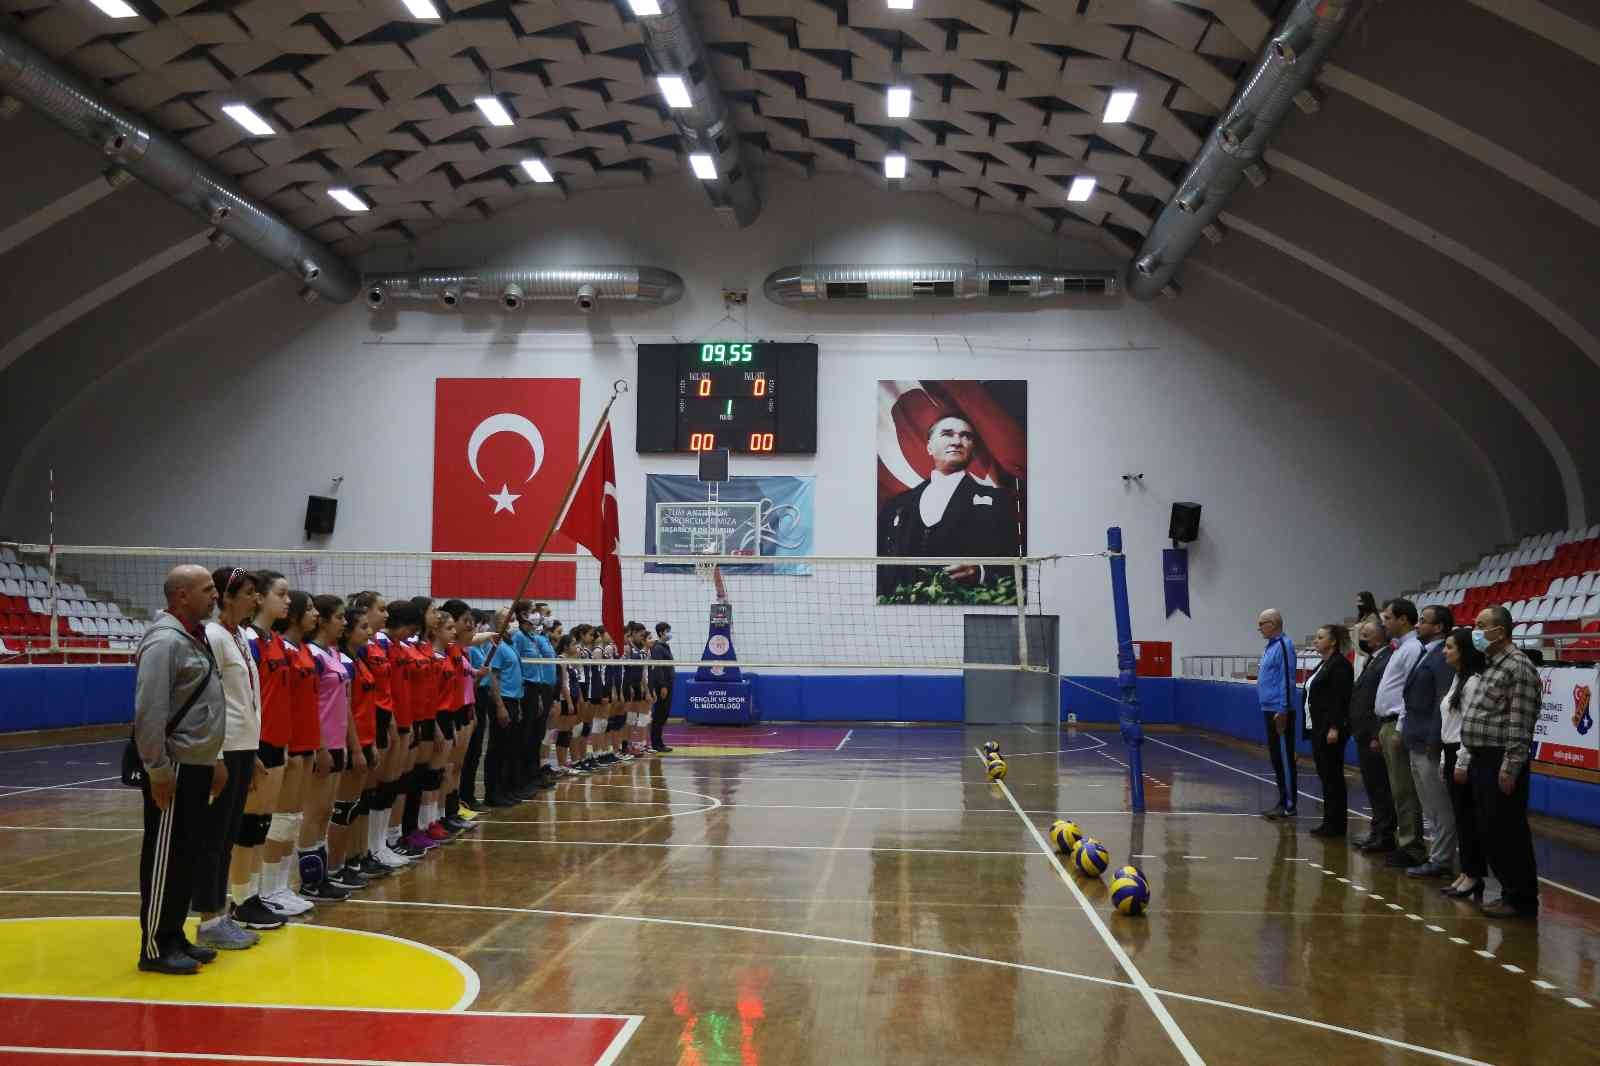 Aydın’da okul sporları voleybol müsabakaları ile başladı #aydin